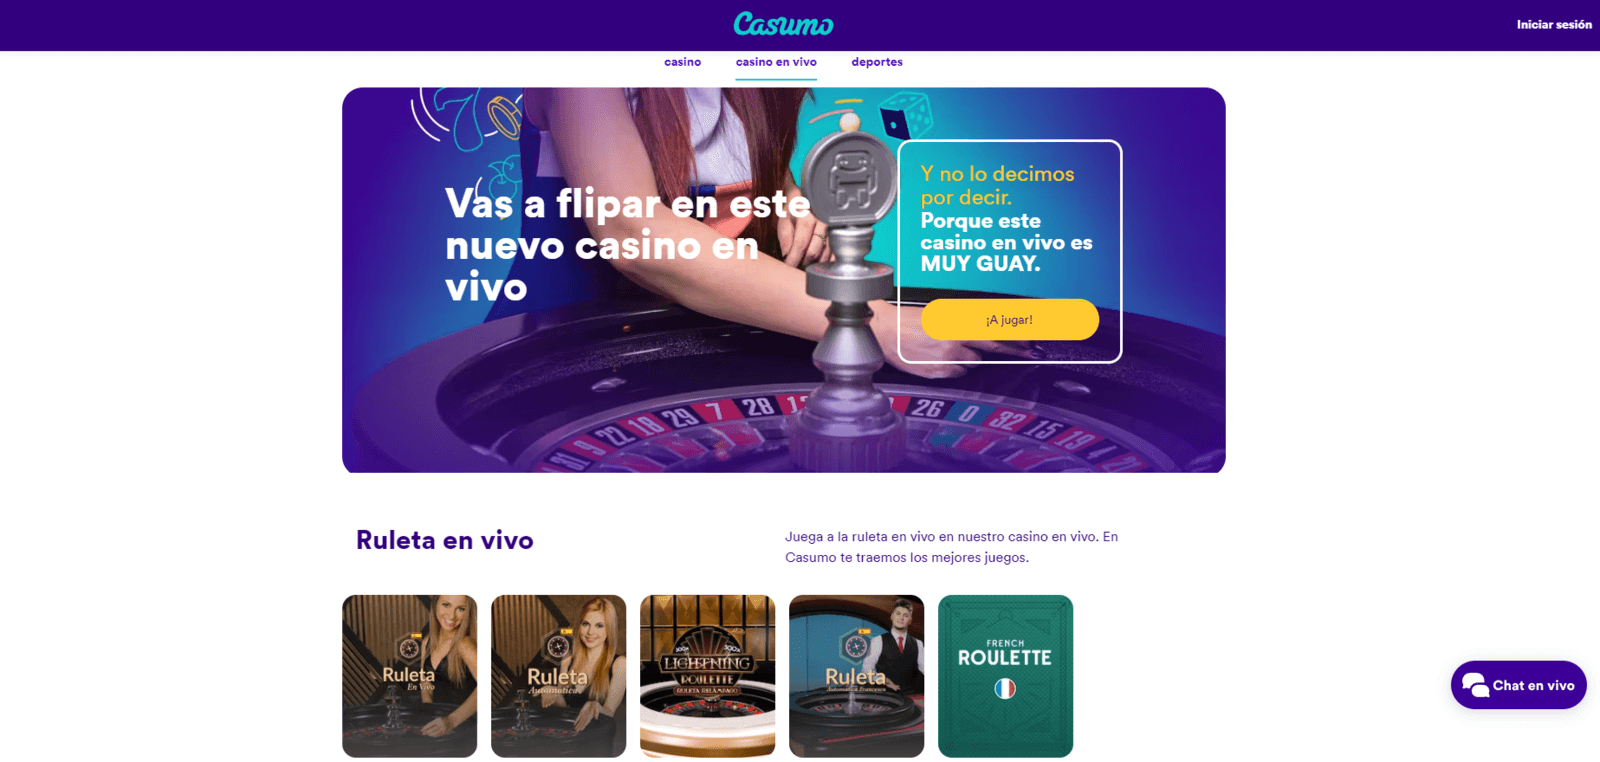 Reseña del Casino Casumo en vivo de España